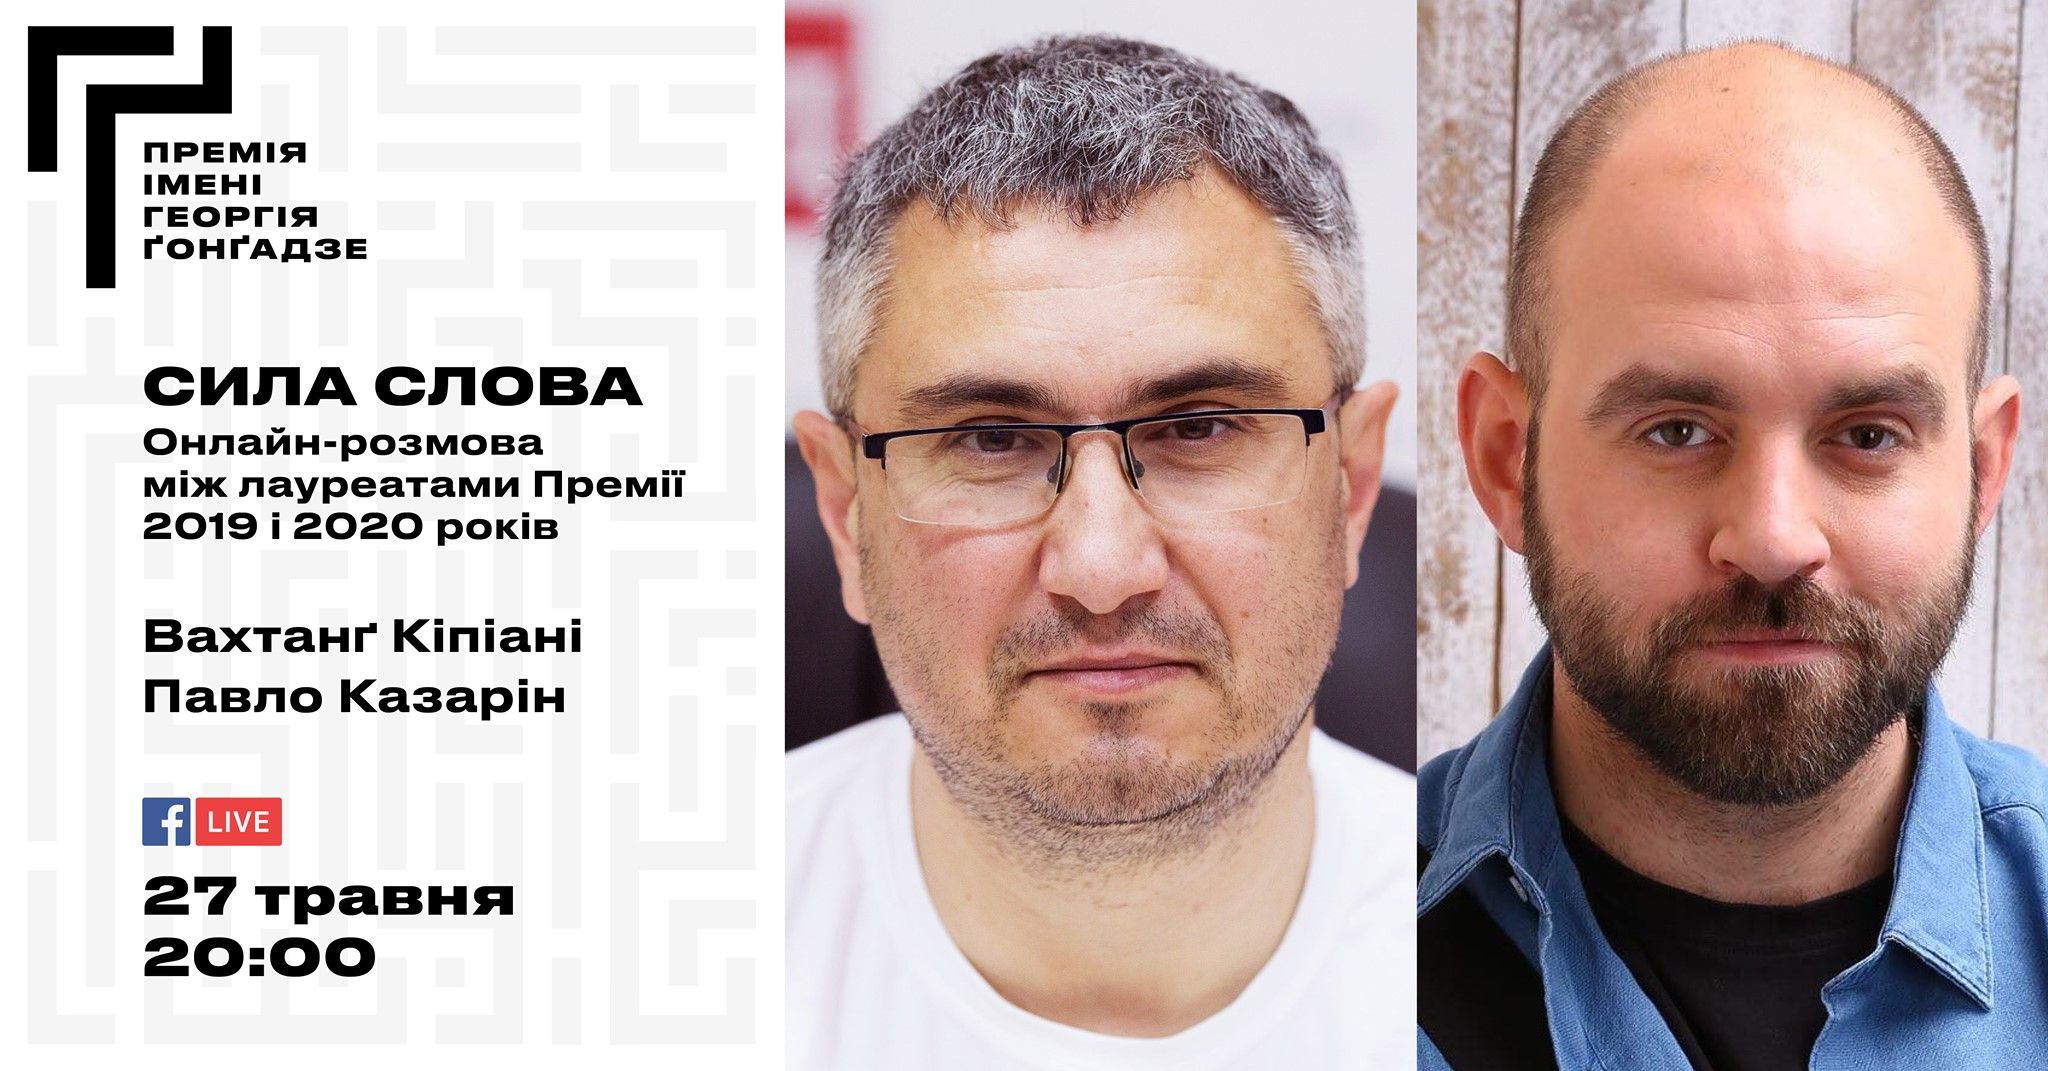 27 травня – онлайн-розмова лауреатів Премії імені Ґонґадзе Вахтанга Кіпіані та Павла Казаріна